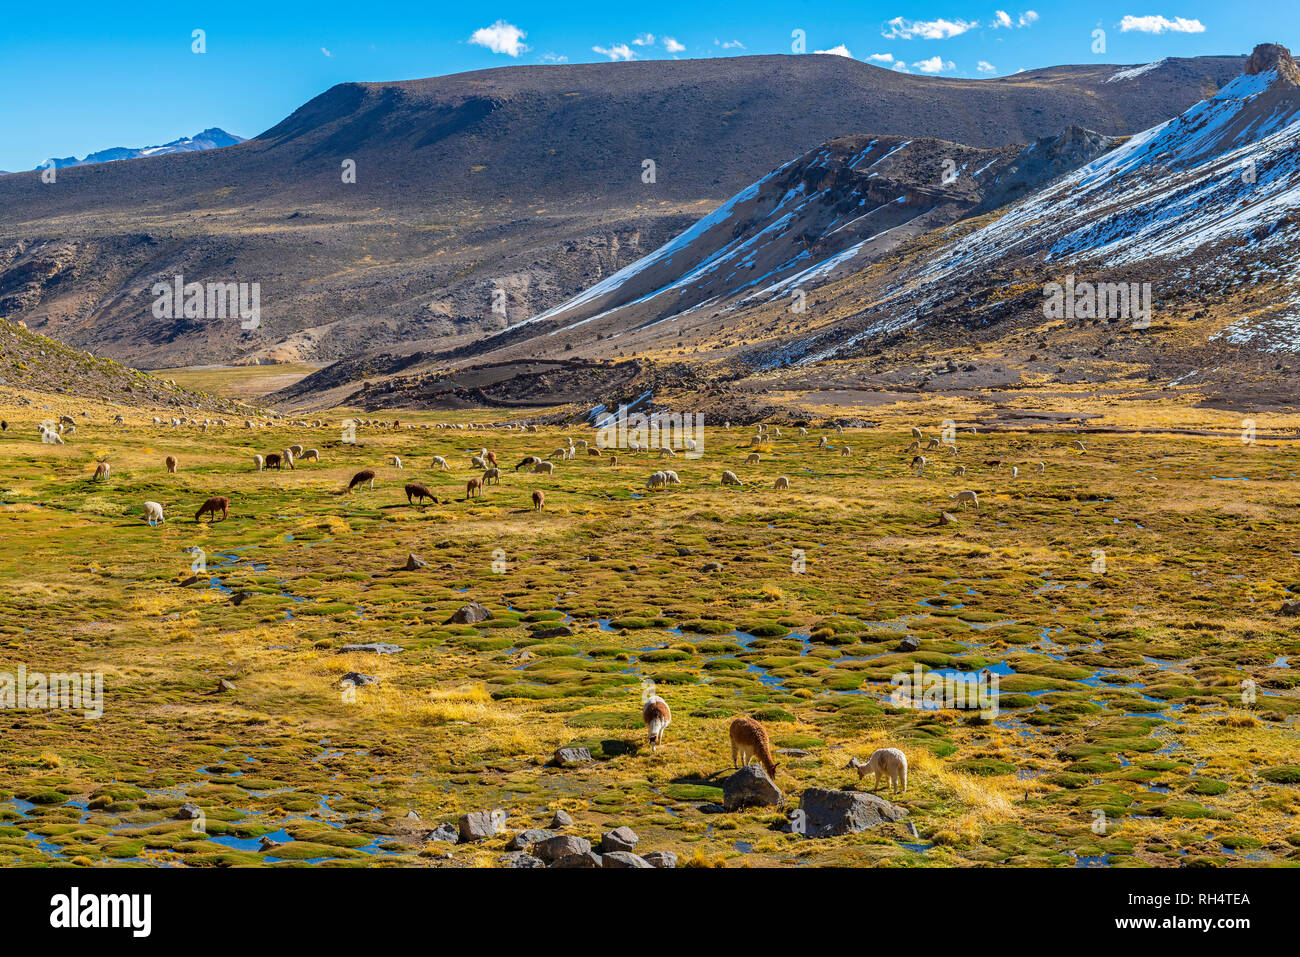 Cientos de alpacas y llamas pastando en un fértil valle en la Reserva Nacional de Salinas y Aguada Blanca por el Cañón del Colca, Arequipa, Perú. Foto de stock